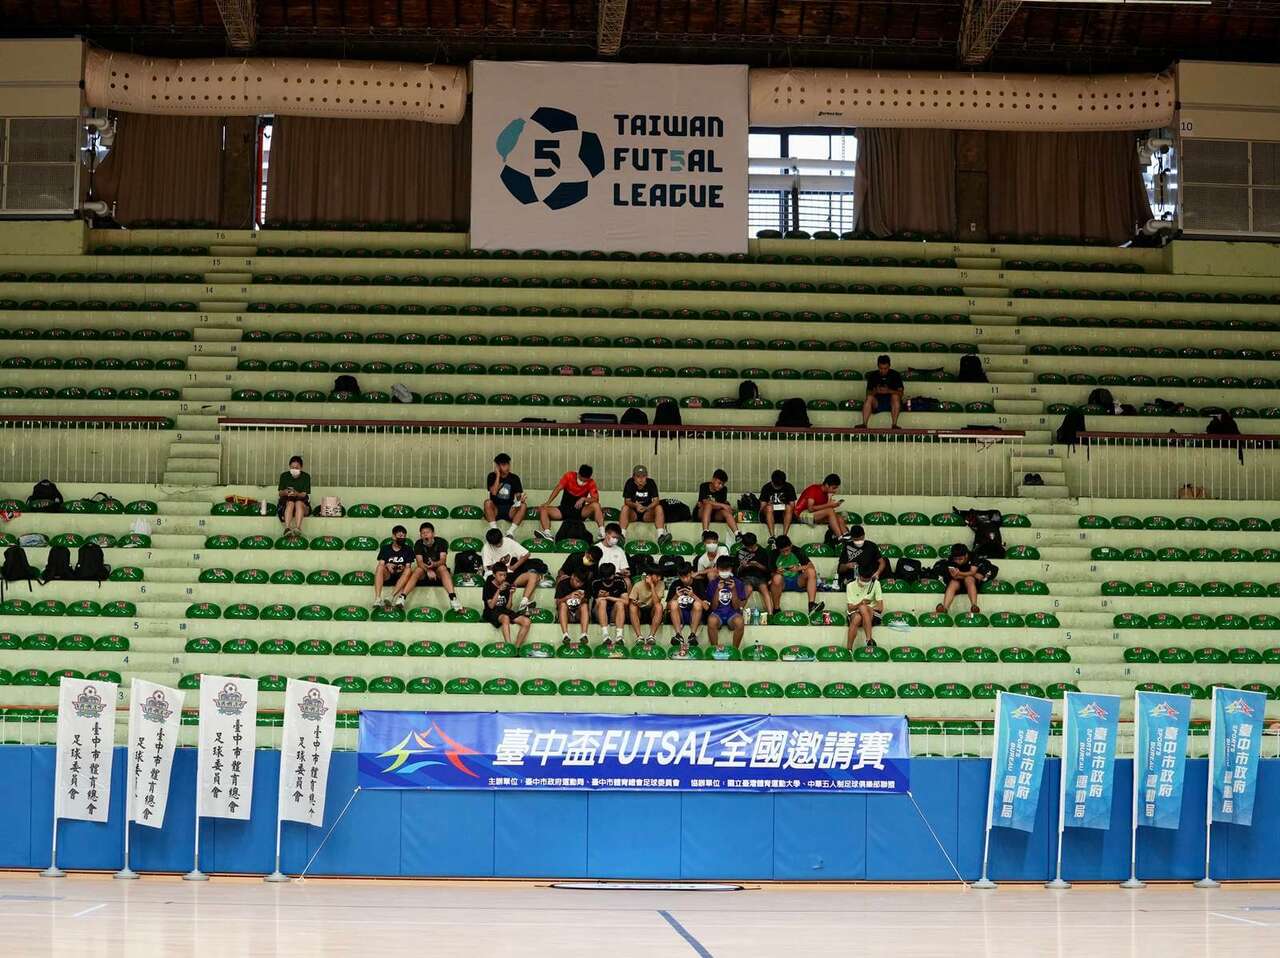 臺中盃是國內五人制史上第一次縣市邀請賽。(臺中市運動局提供)